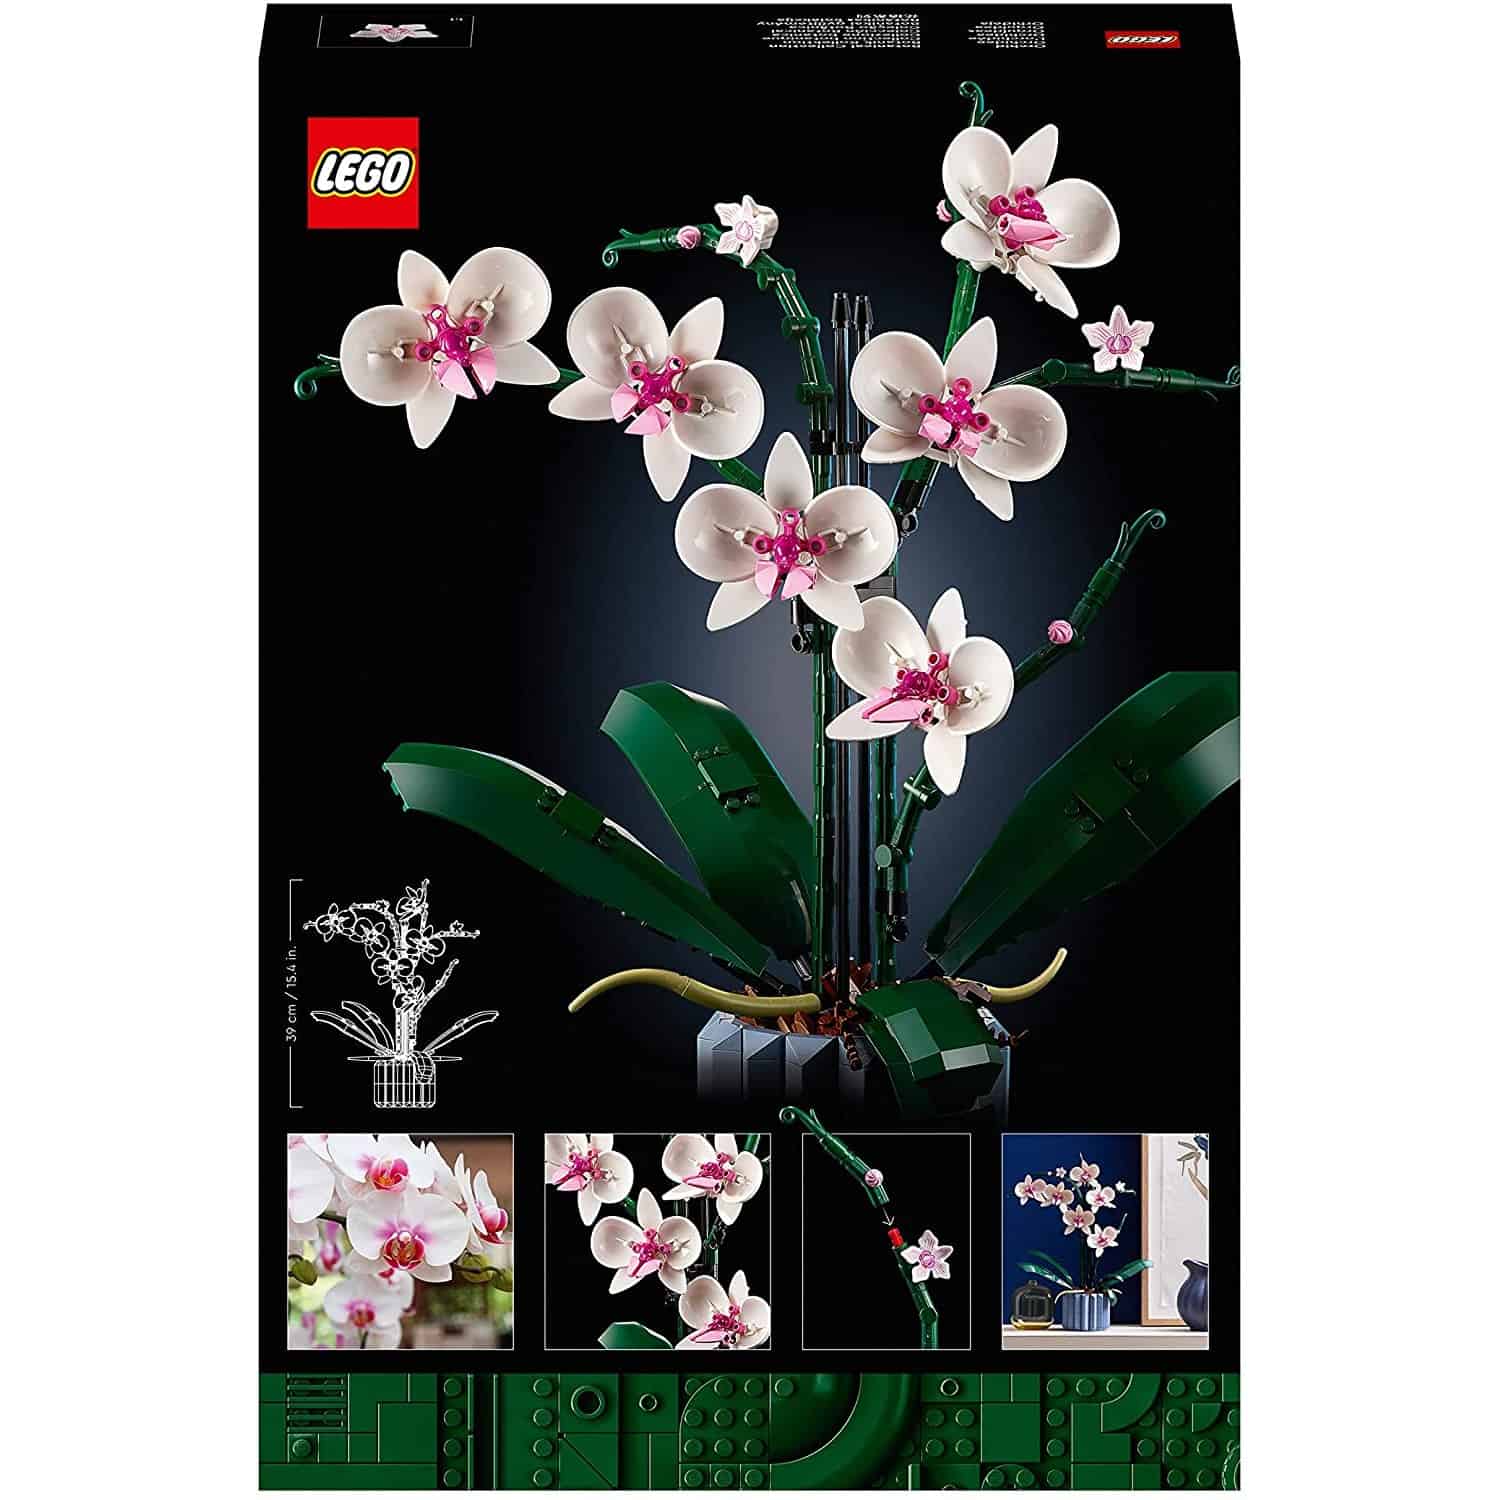 Lego Botanical Collection CRETAOR EXPERT Orchidea a 49.99